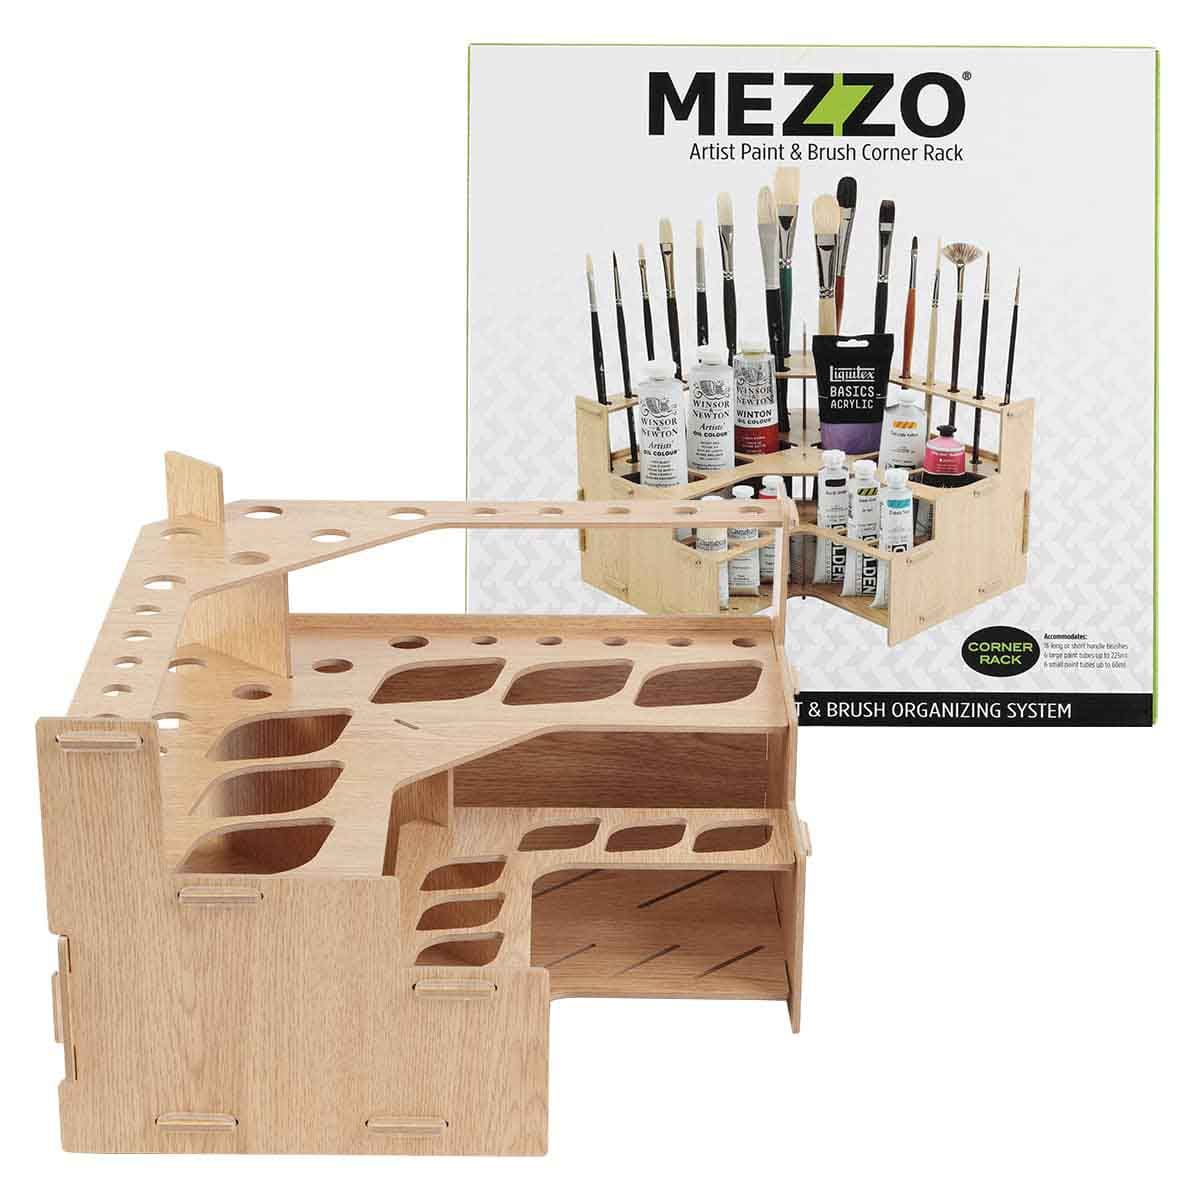 Mezzo Artist Paint & Brush Corner Rack